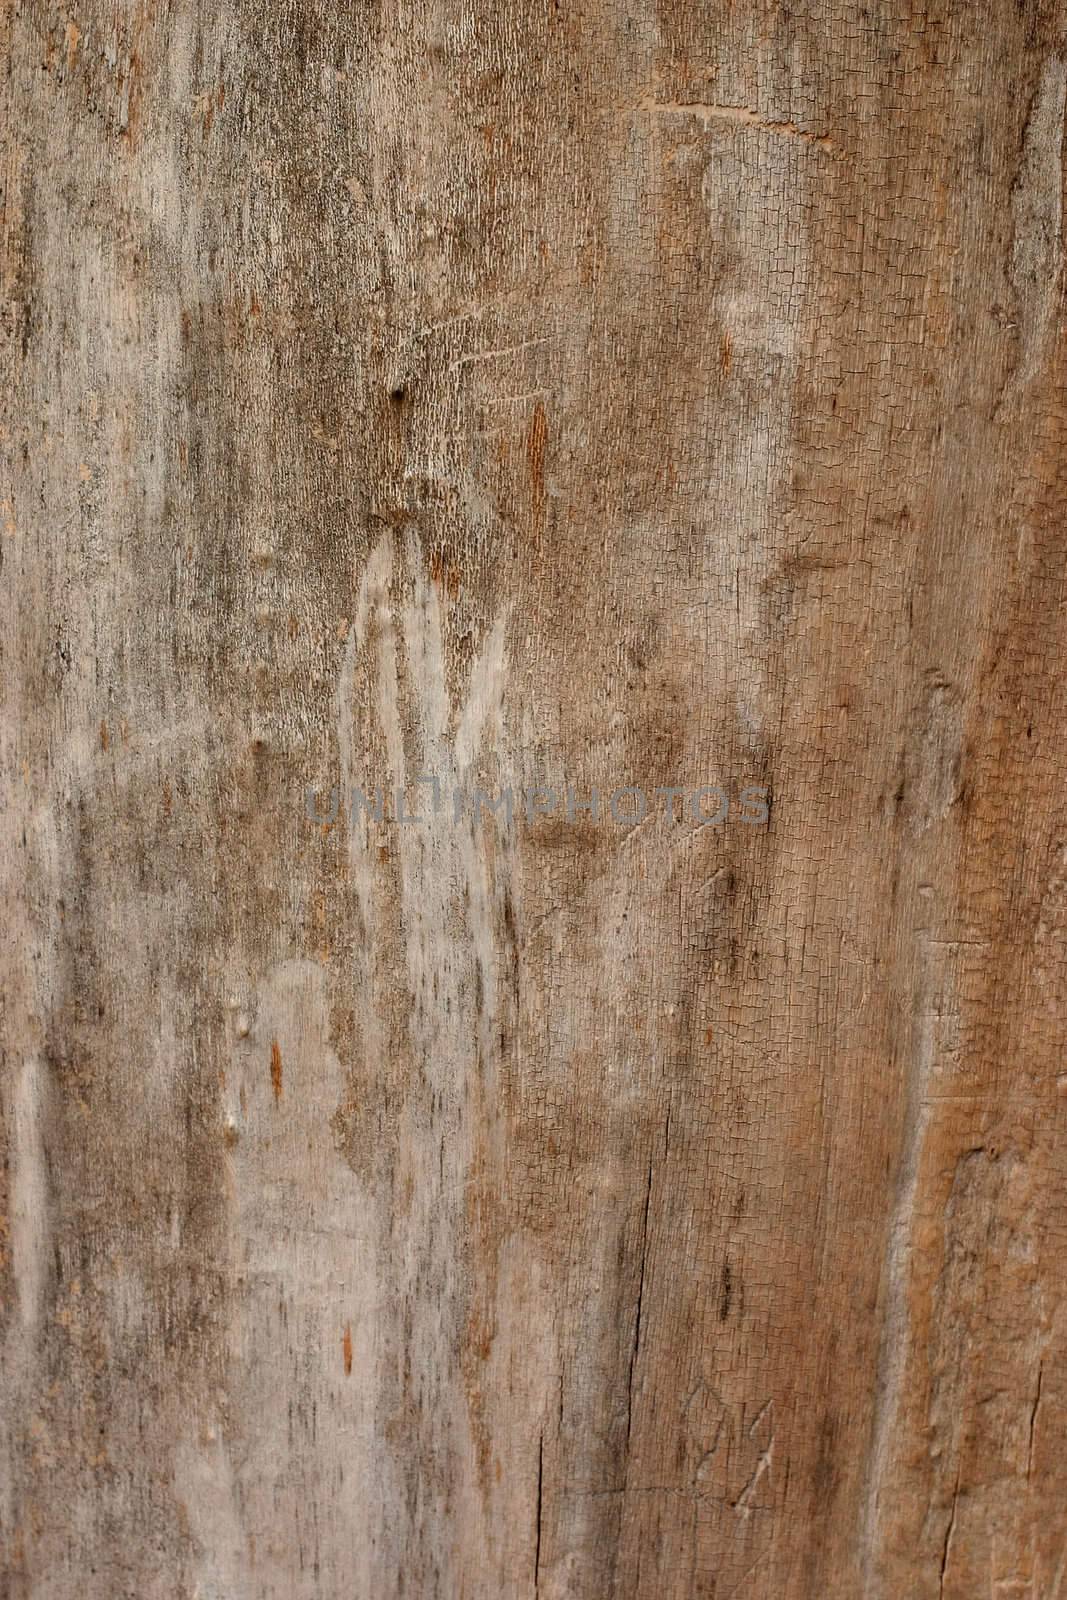 wooden texture background by zhu_zhu